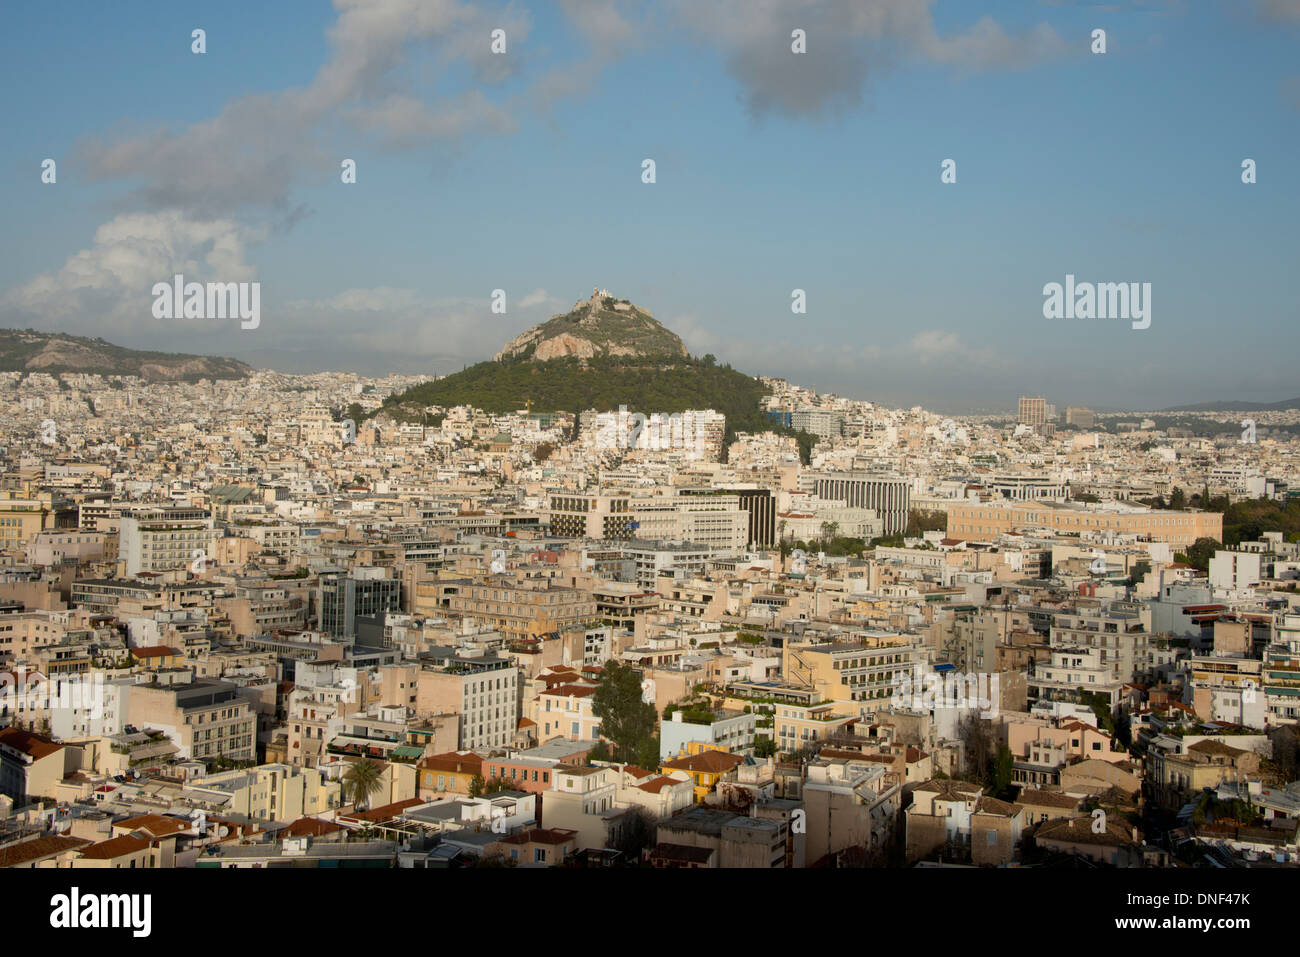 Grèce, Athènes, acropole. Sommaire d'Athènes avec le Mont Lycabette Athènes", point le plus haut. Banque D'Images